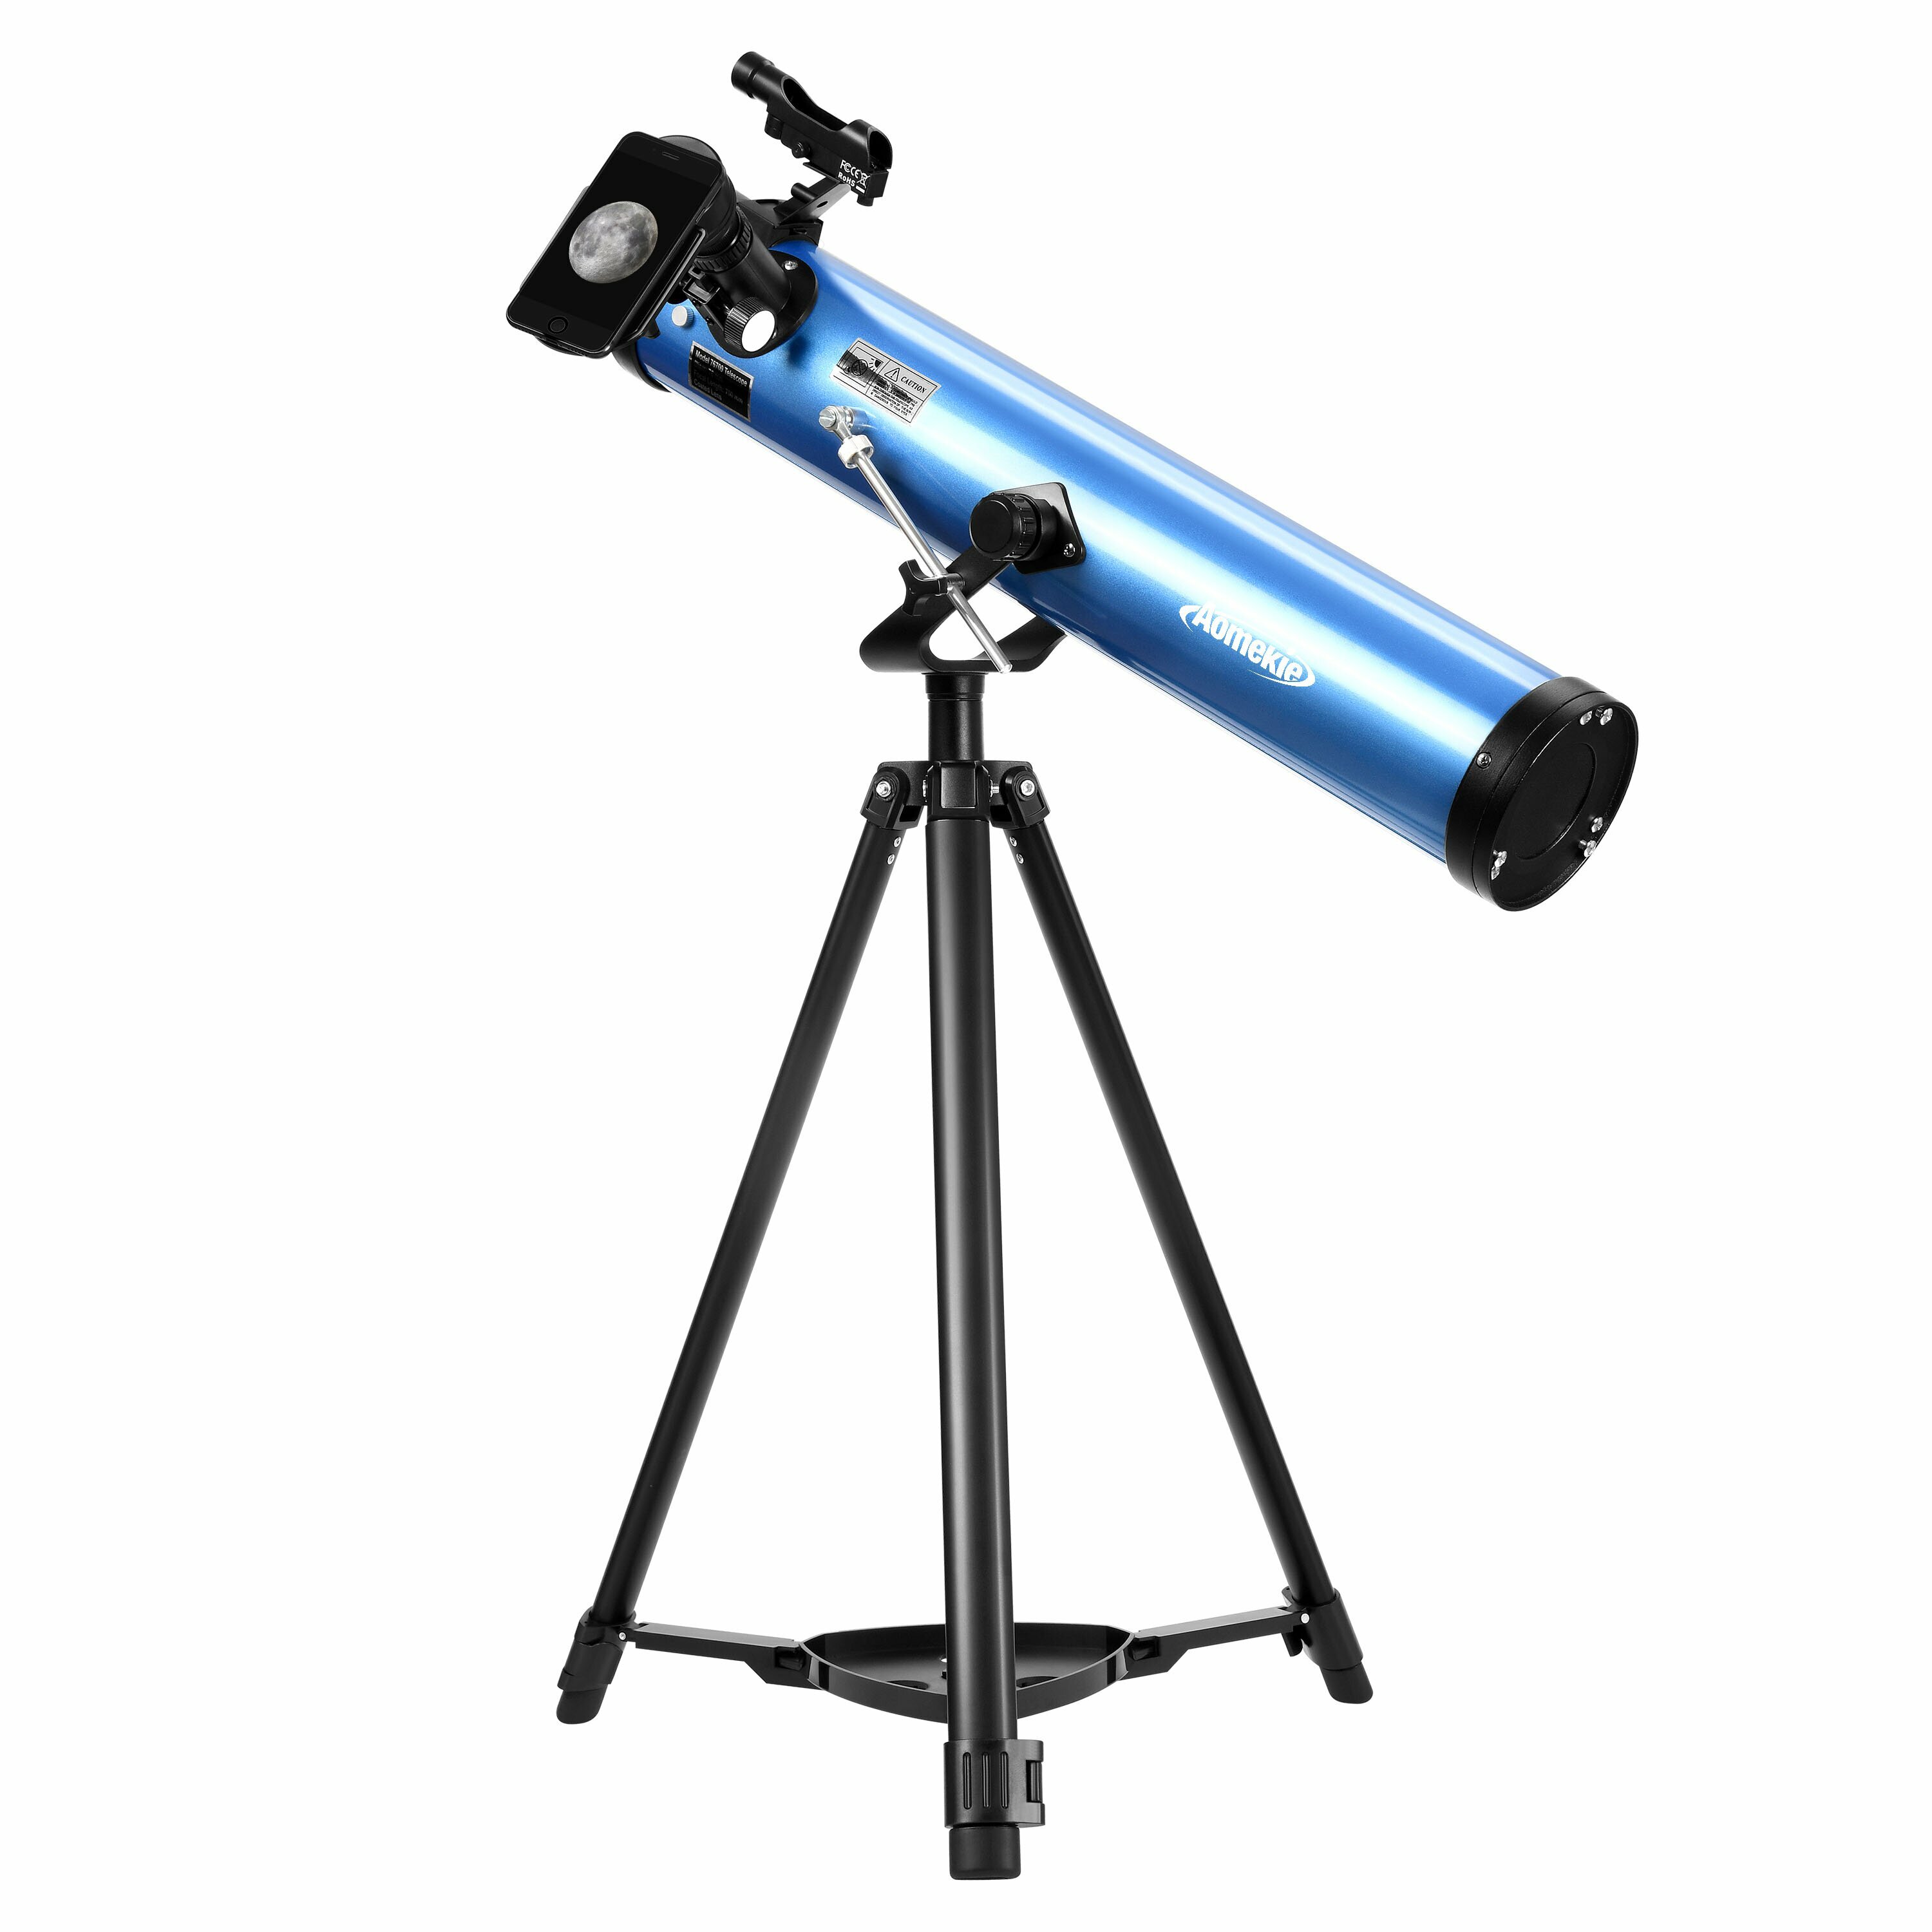 [EU Bezpośrednie] Teleskopy reflektorowe AOMEKIE dla początkujących w astronomii 76mm/700mm z adapterem telefonicznym,kontrolerem Bluetooth,statywem,lunetką i filtrem na Księżyc A02018